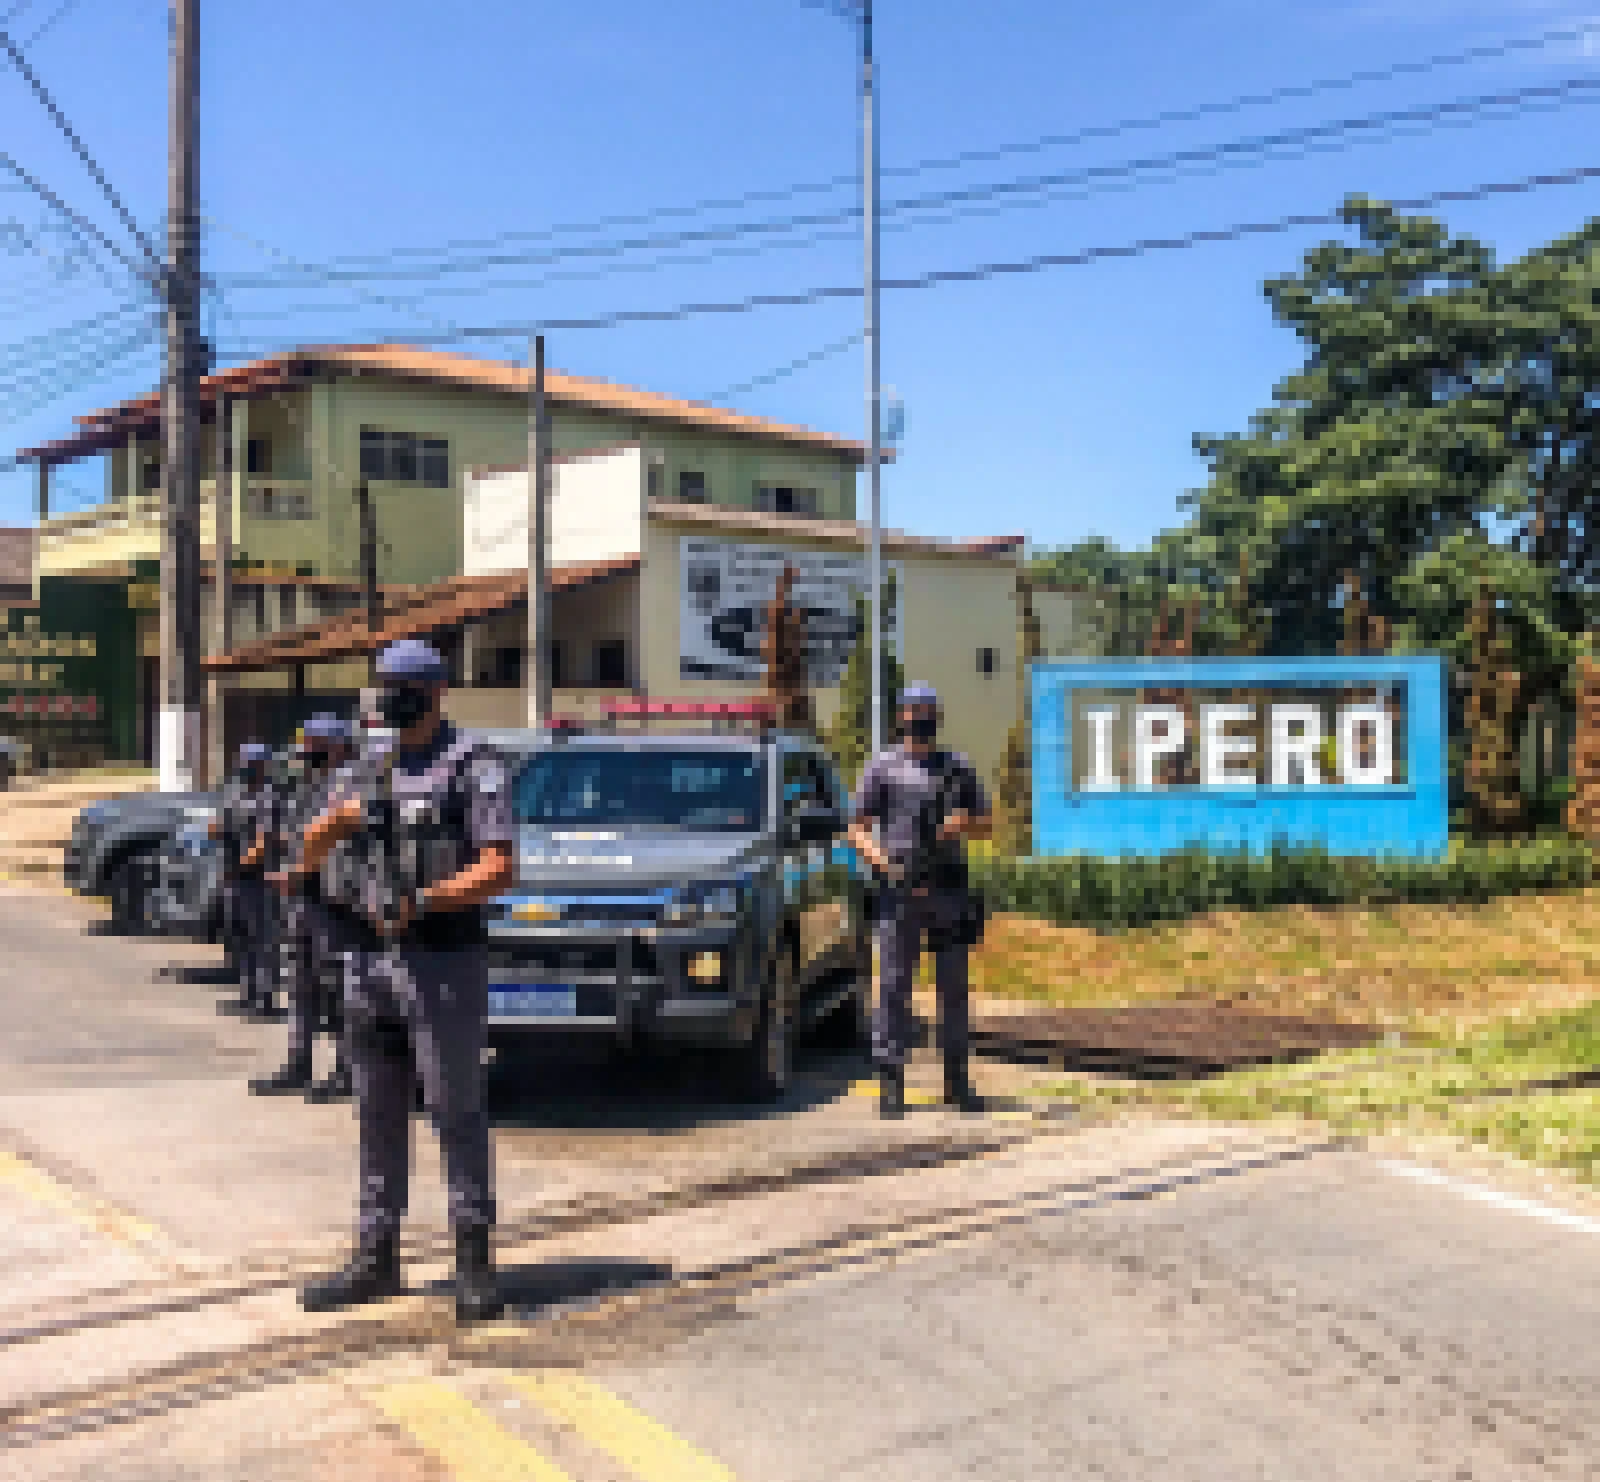 Baep captura procurado pelo crime de tráfico de drogas em Iperó